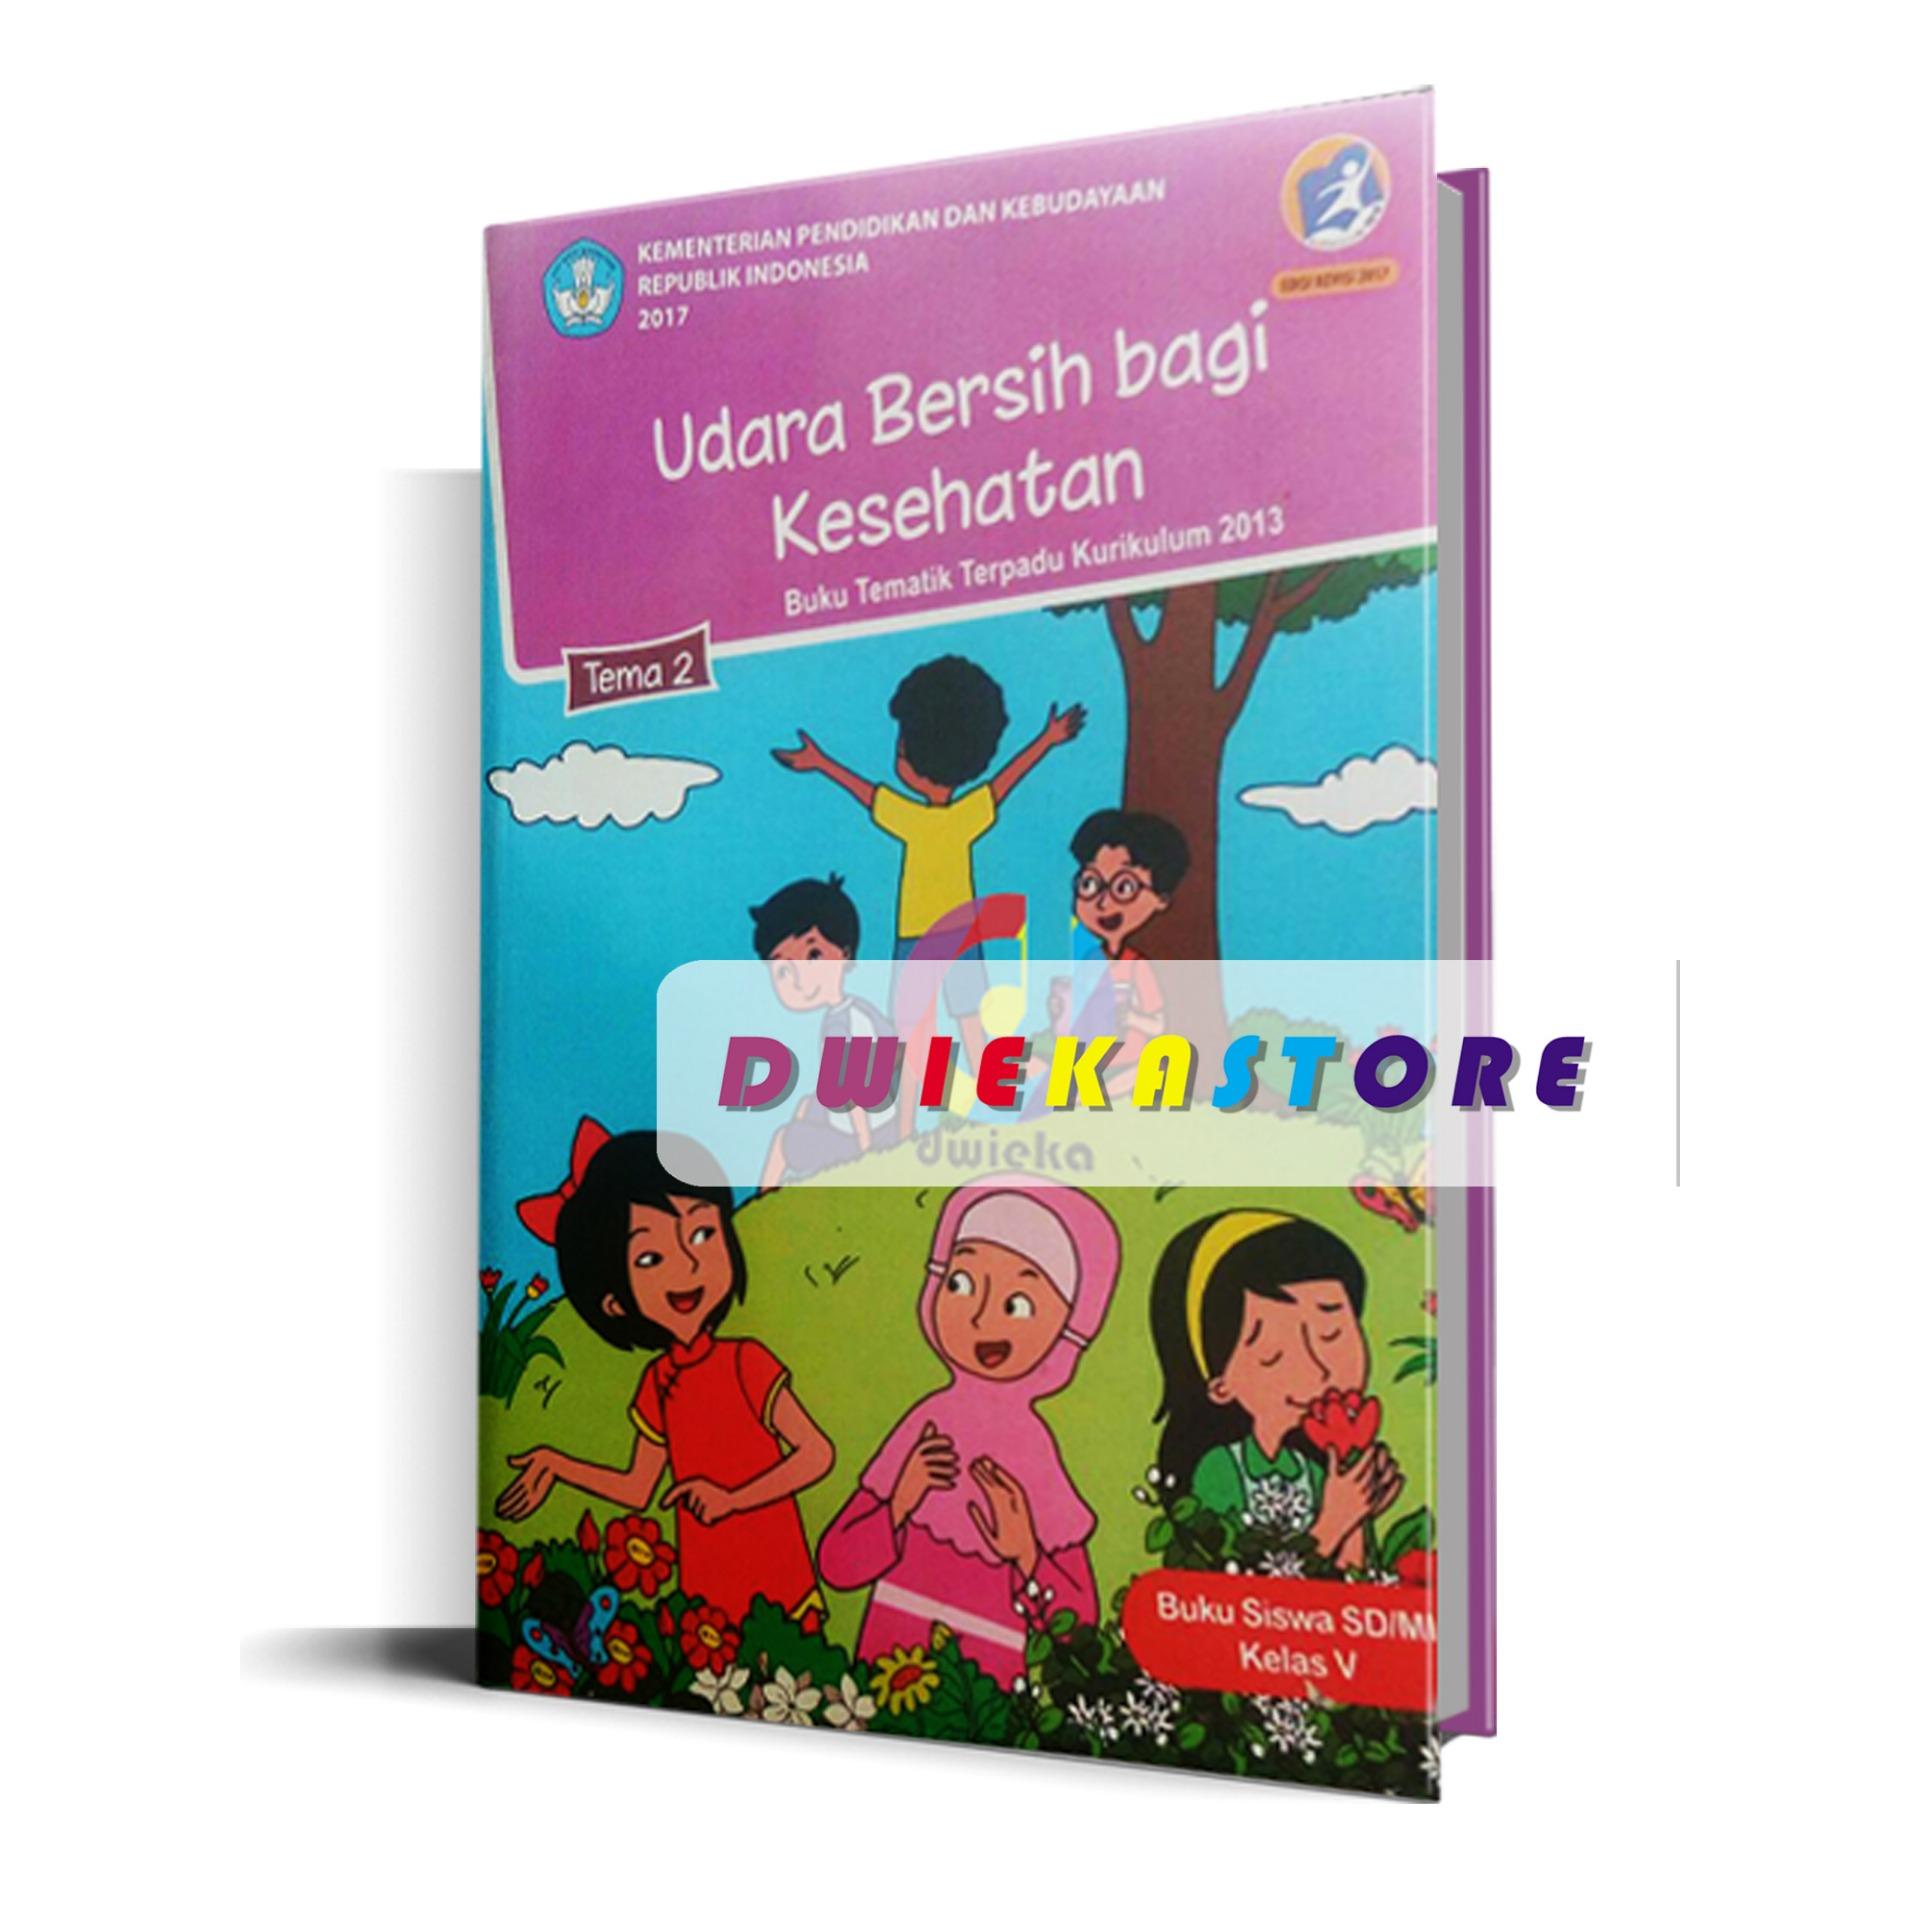 Buku Tematik Kelas 5 tema 2 Udara Bersih Bagi Kesehatan Revisi 2017 Kurikulum 2013IDR Rp 13 500